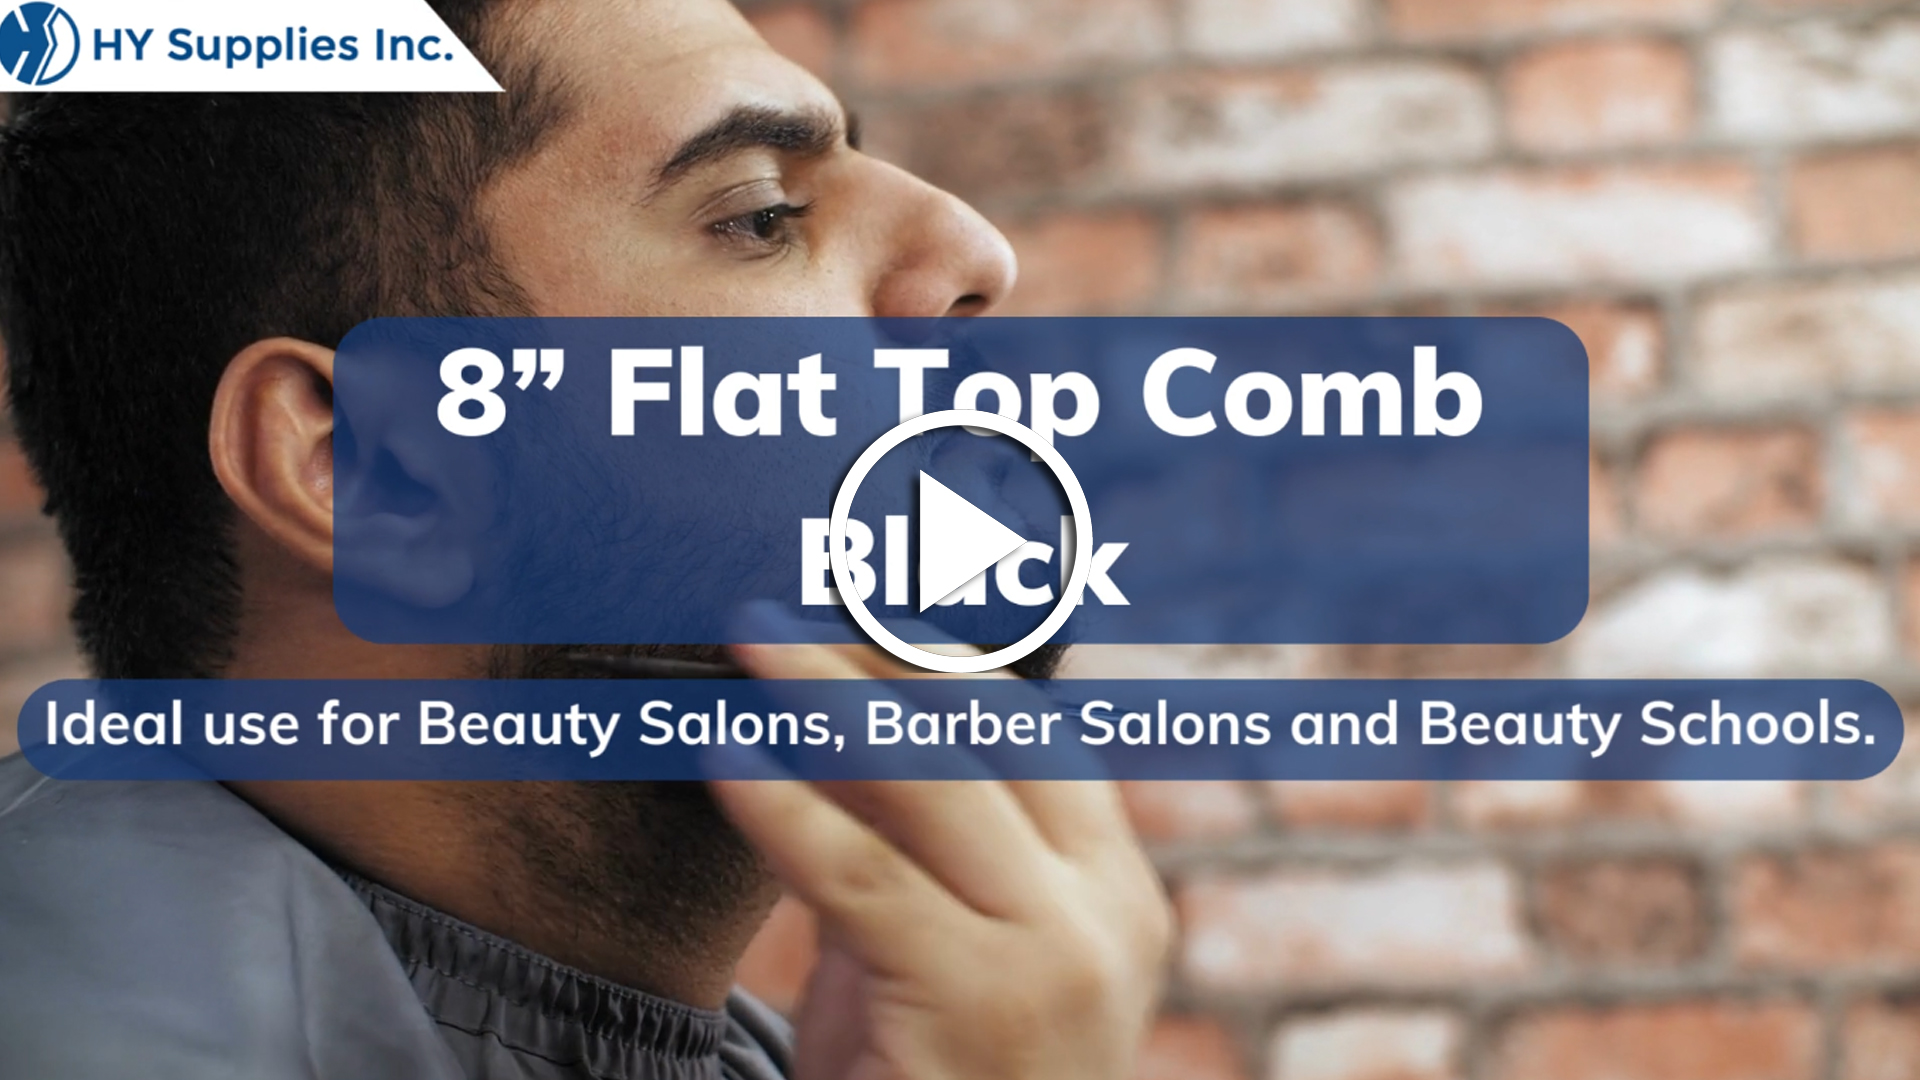 8” Flat Top Comb Black